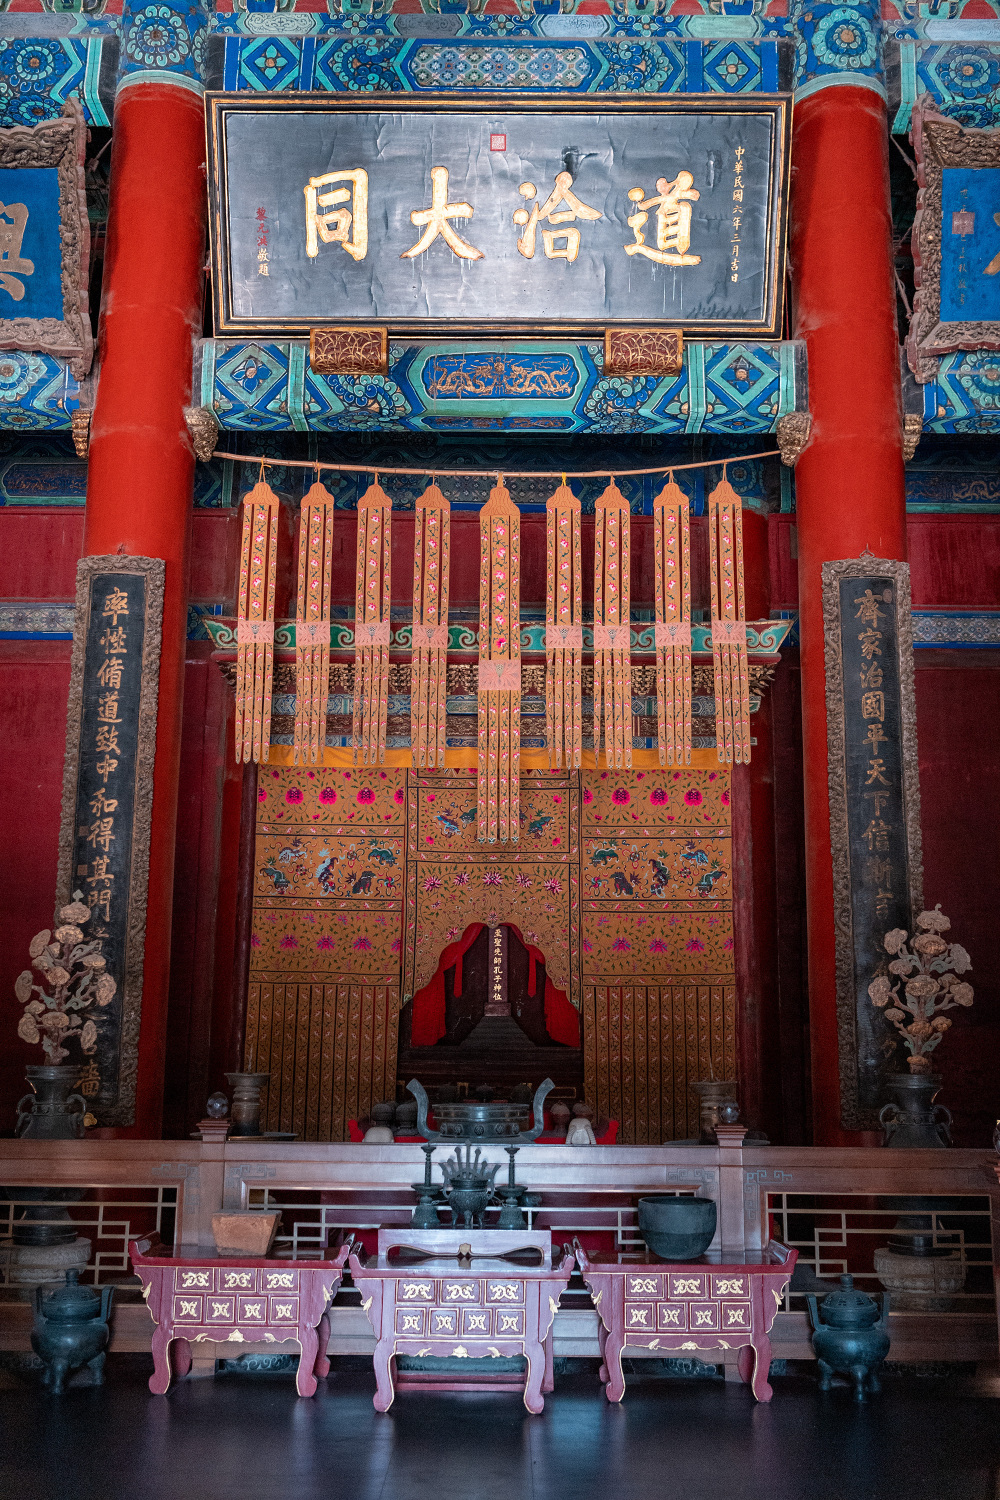 谁有资格在北京孔庙大成殿挂匾?这12块匾个个来历不一般